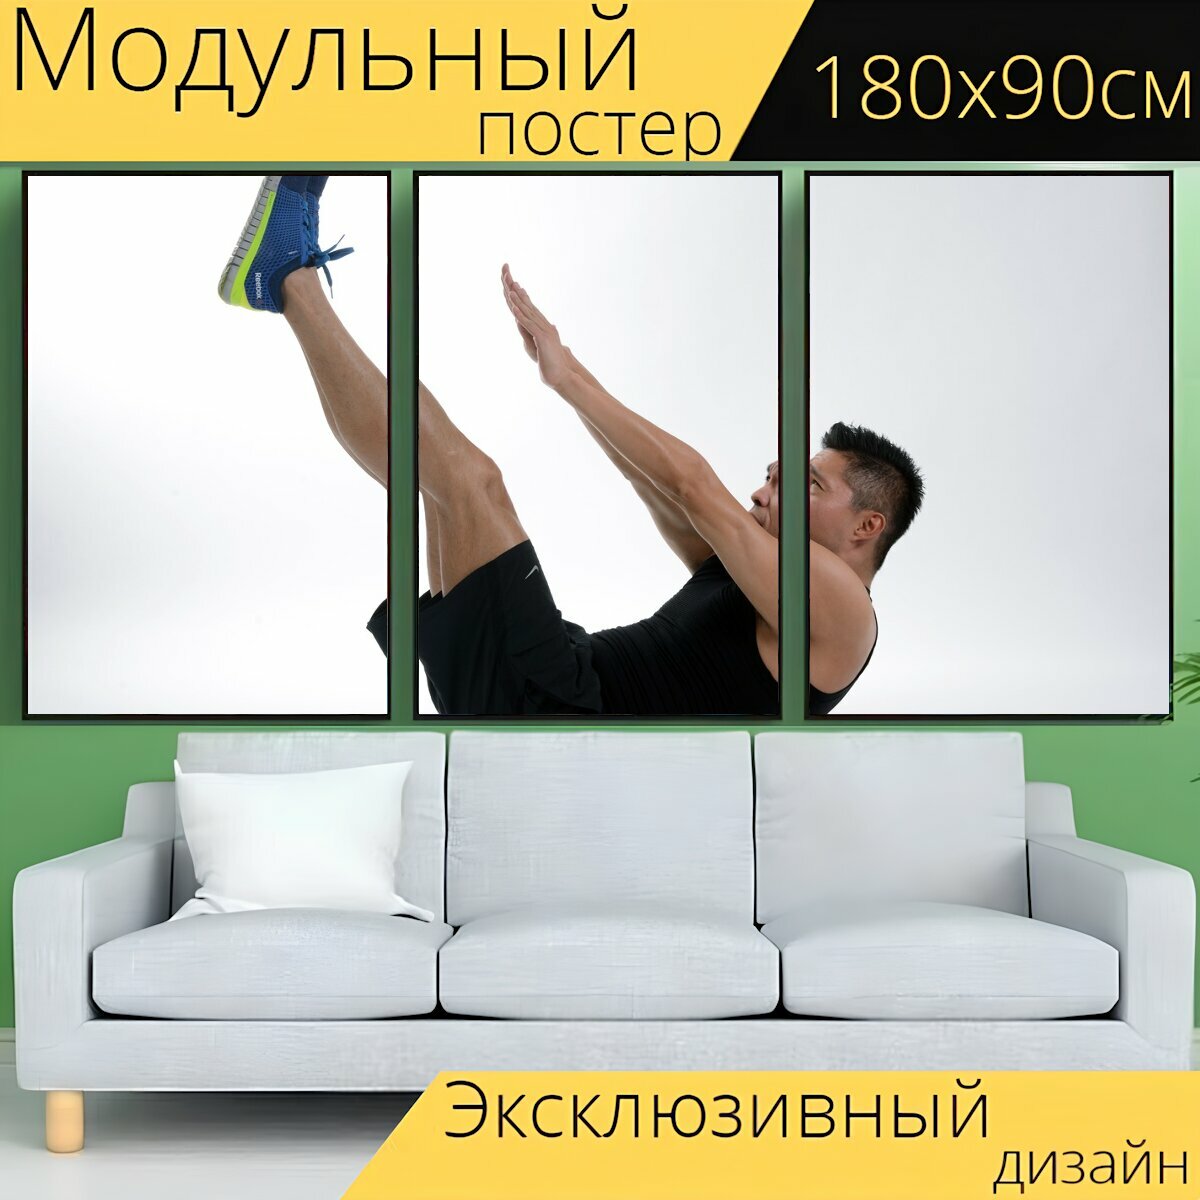 Модульный постер "Спорт, фитнес, упражнение" 180 x 90 см. для интерьера